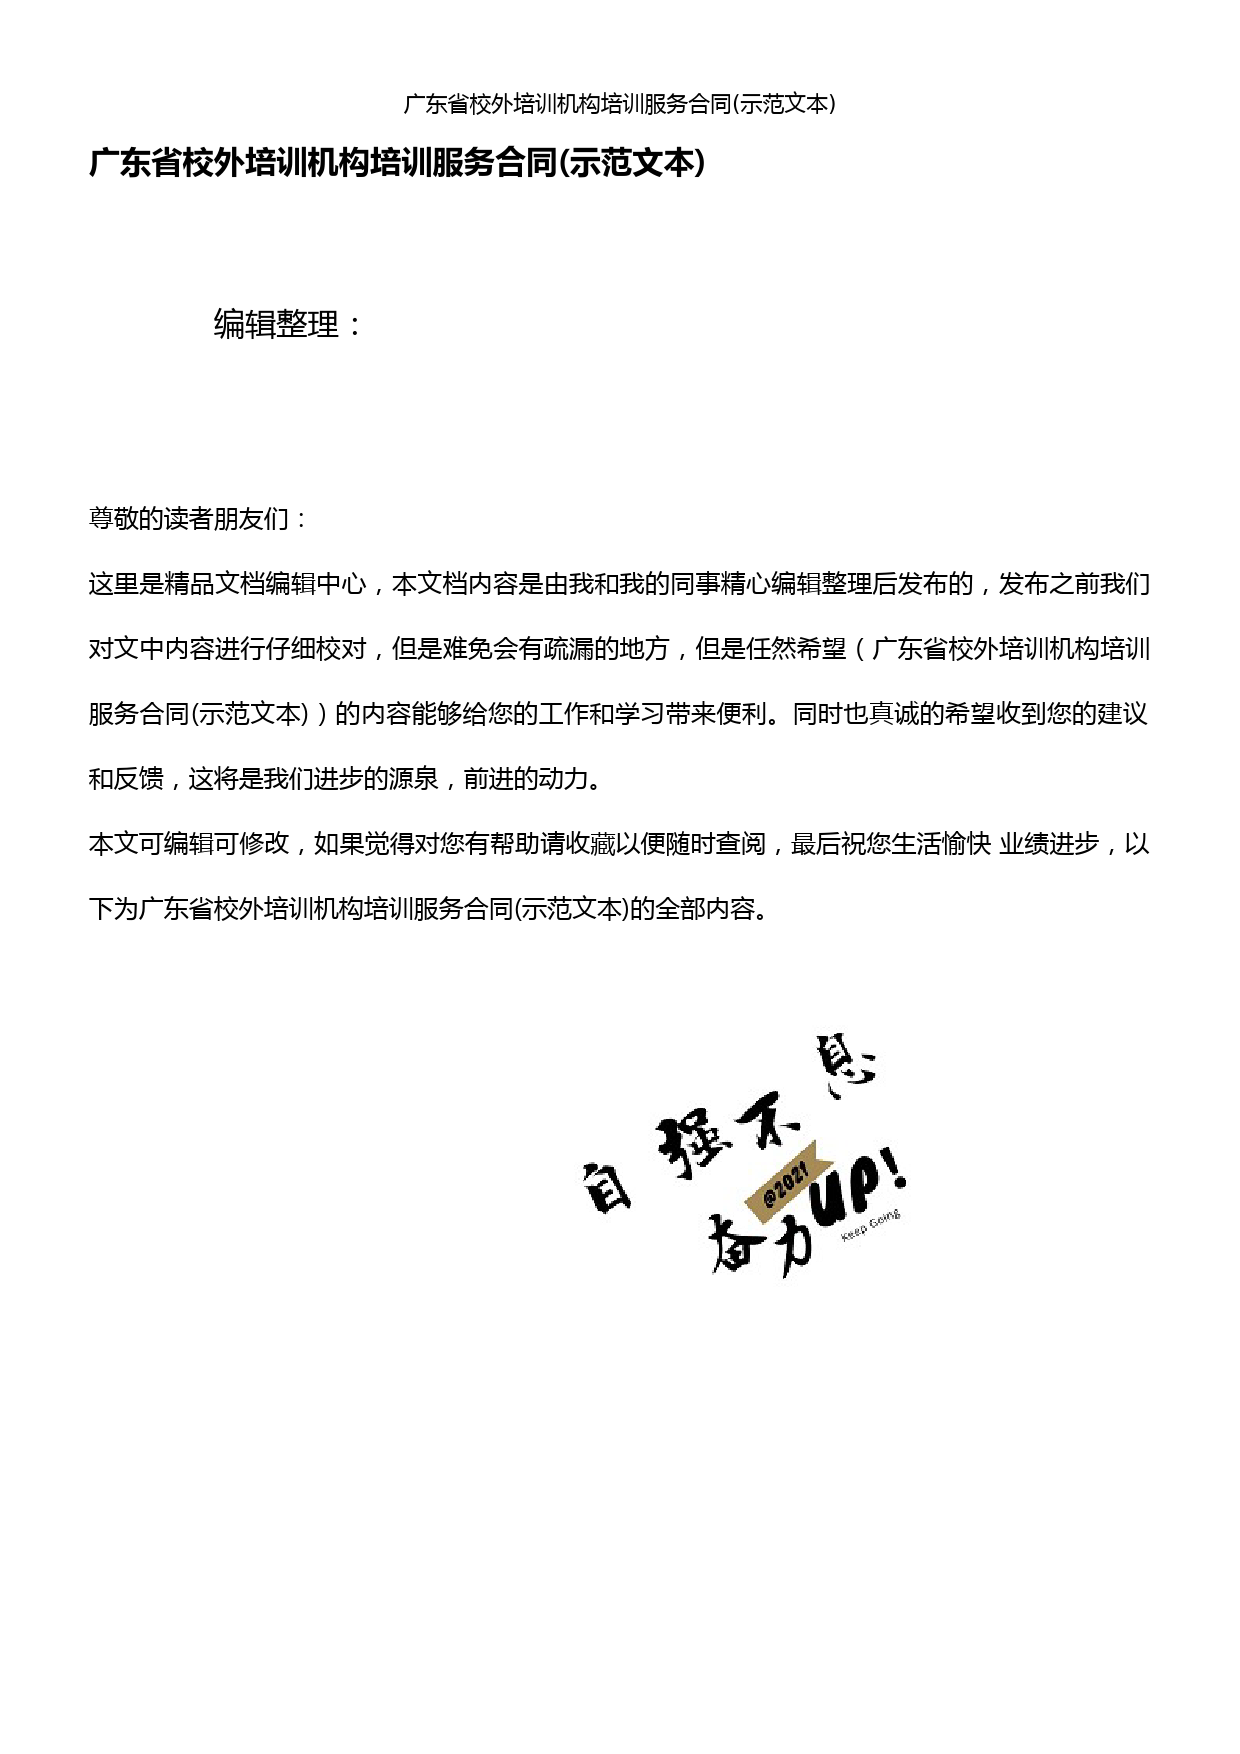 (2021年整理)广东省校外培训机构培训服务合同(示范文本)